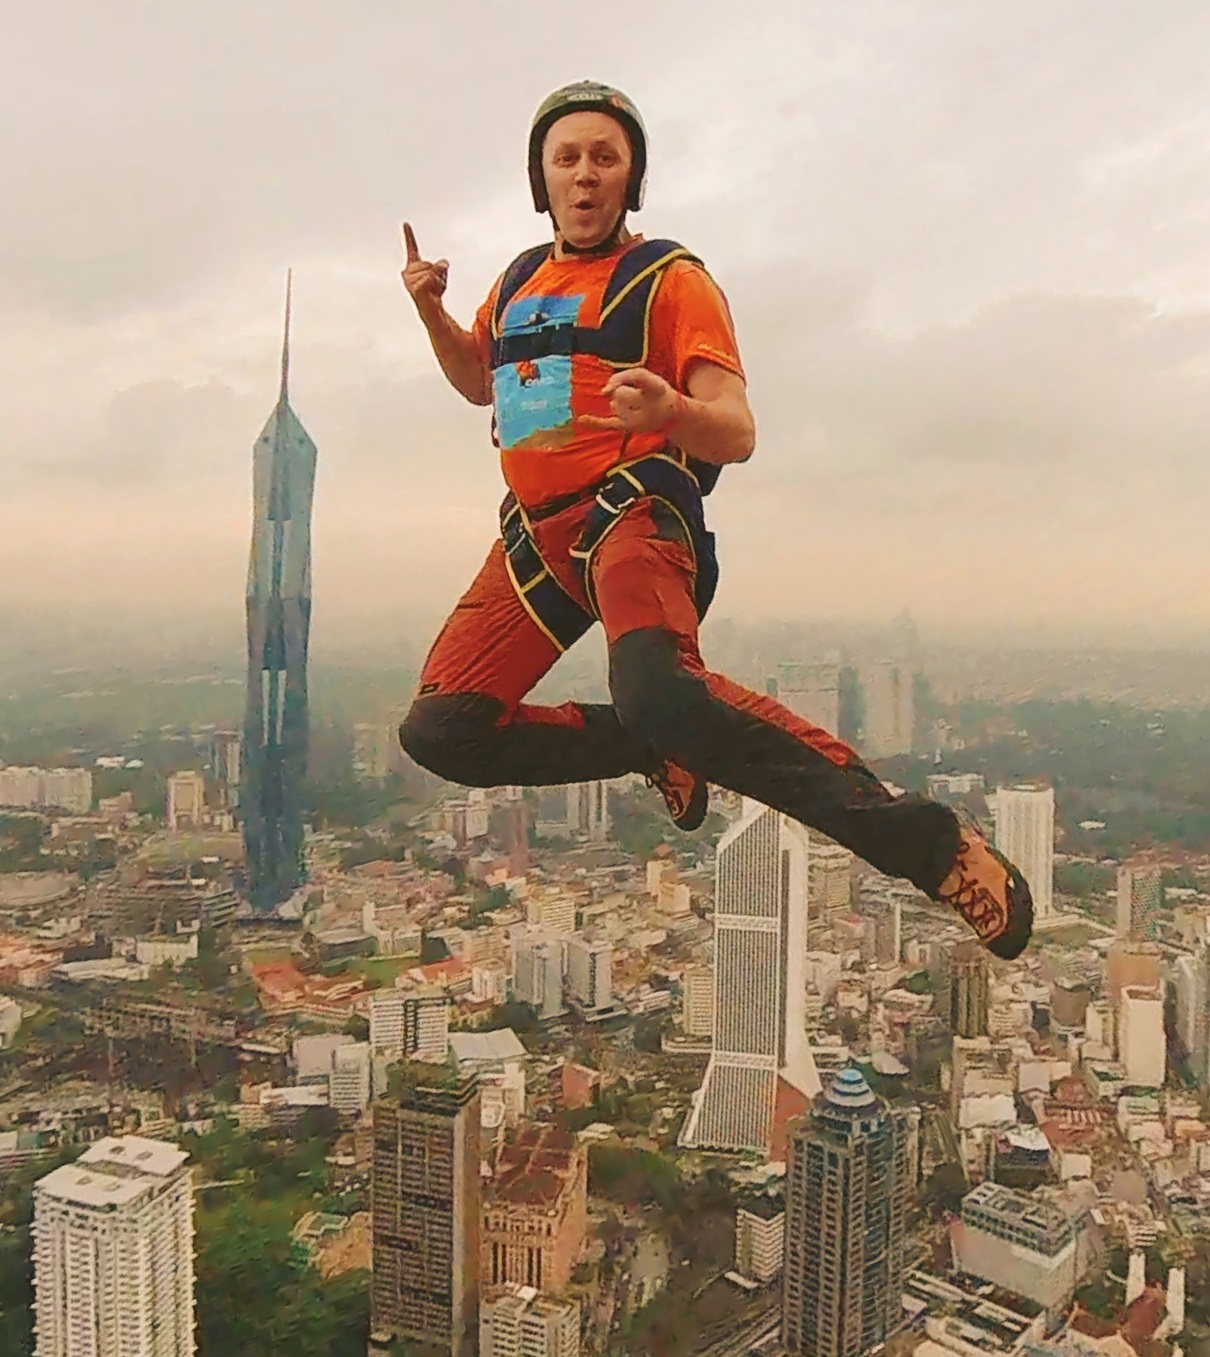 Костромич спрыгнул с 400-метровой вышки в Малайзии